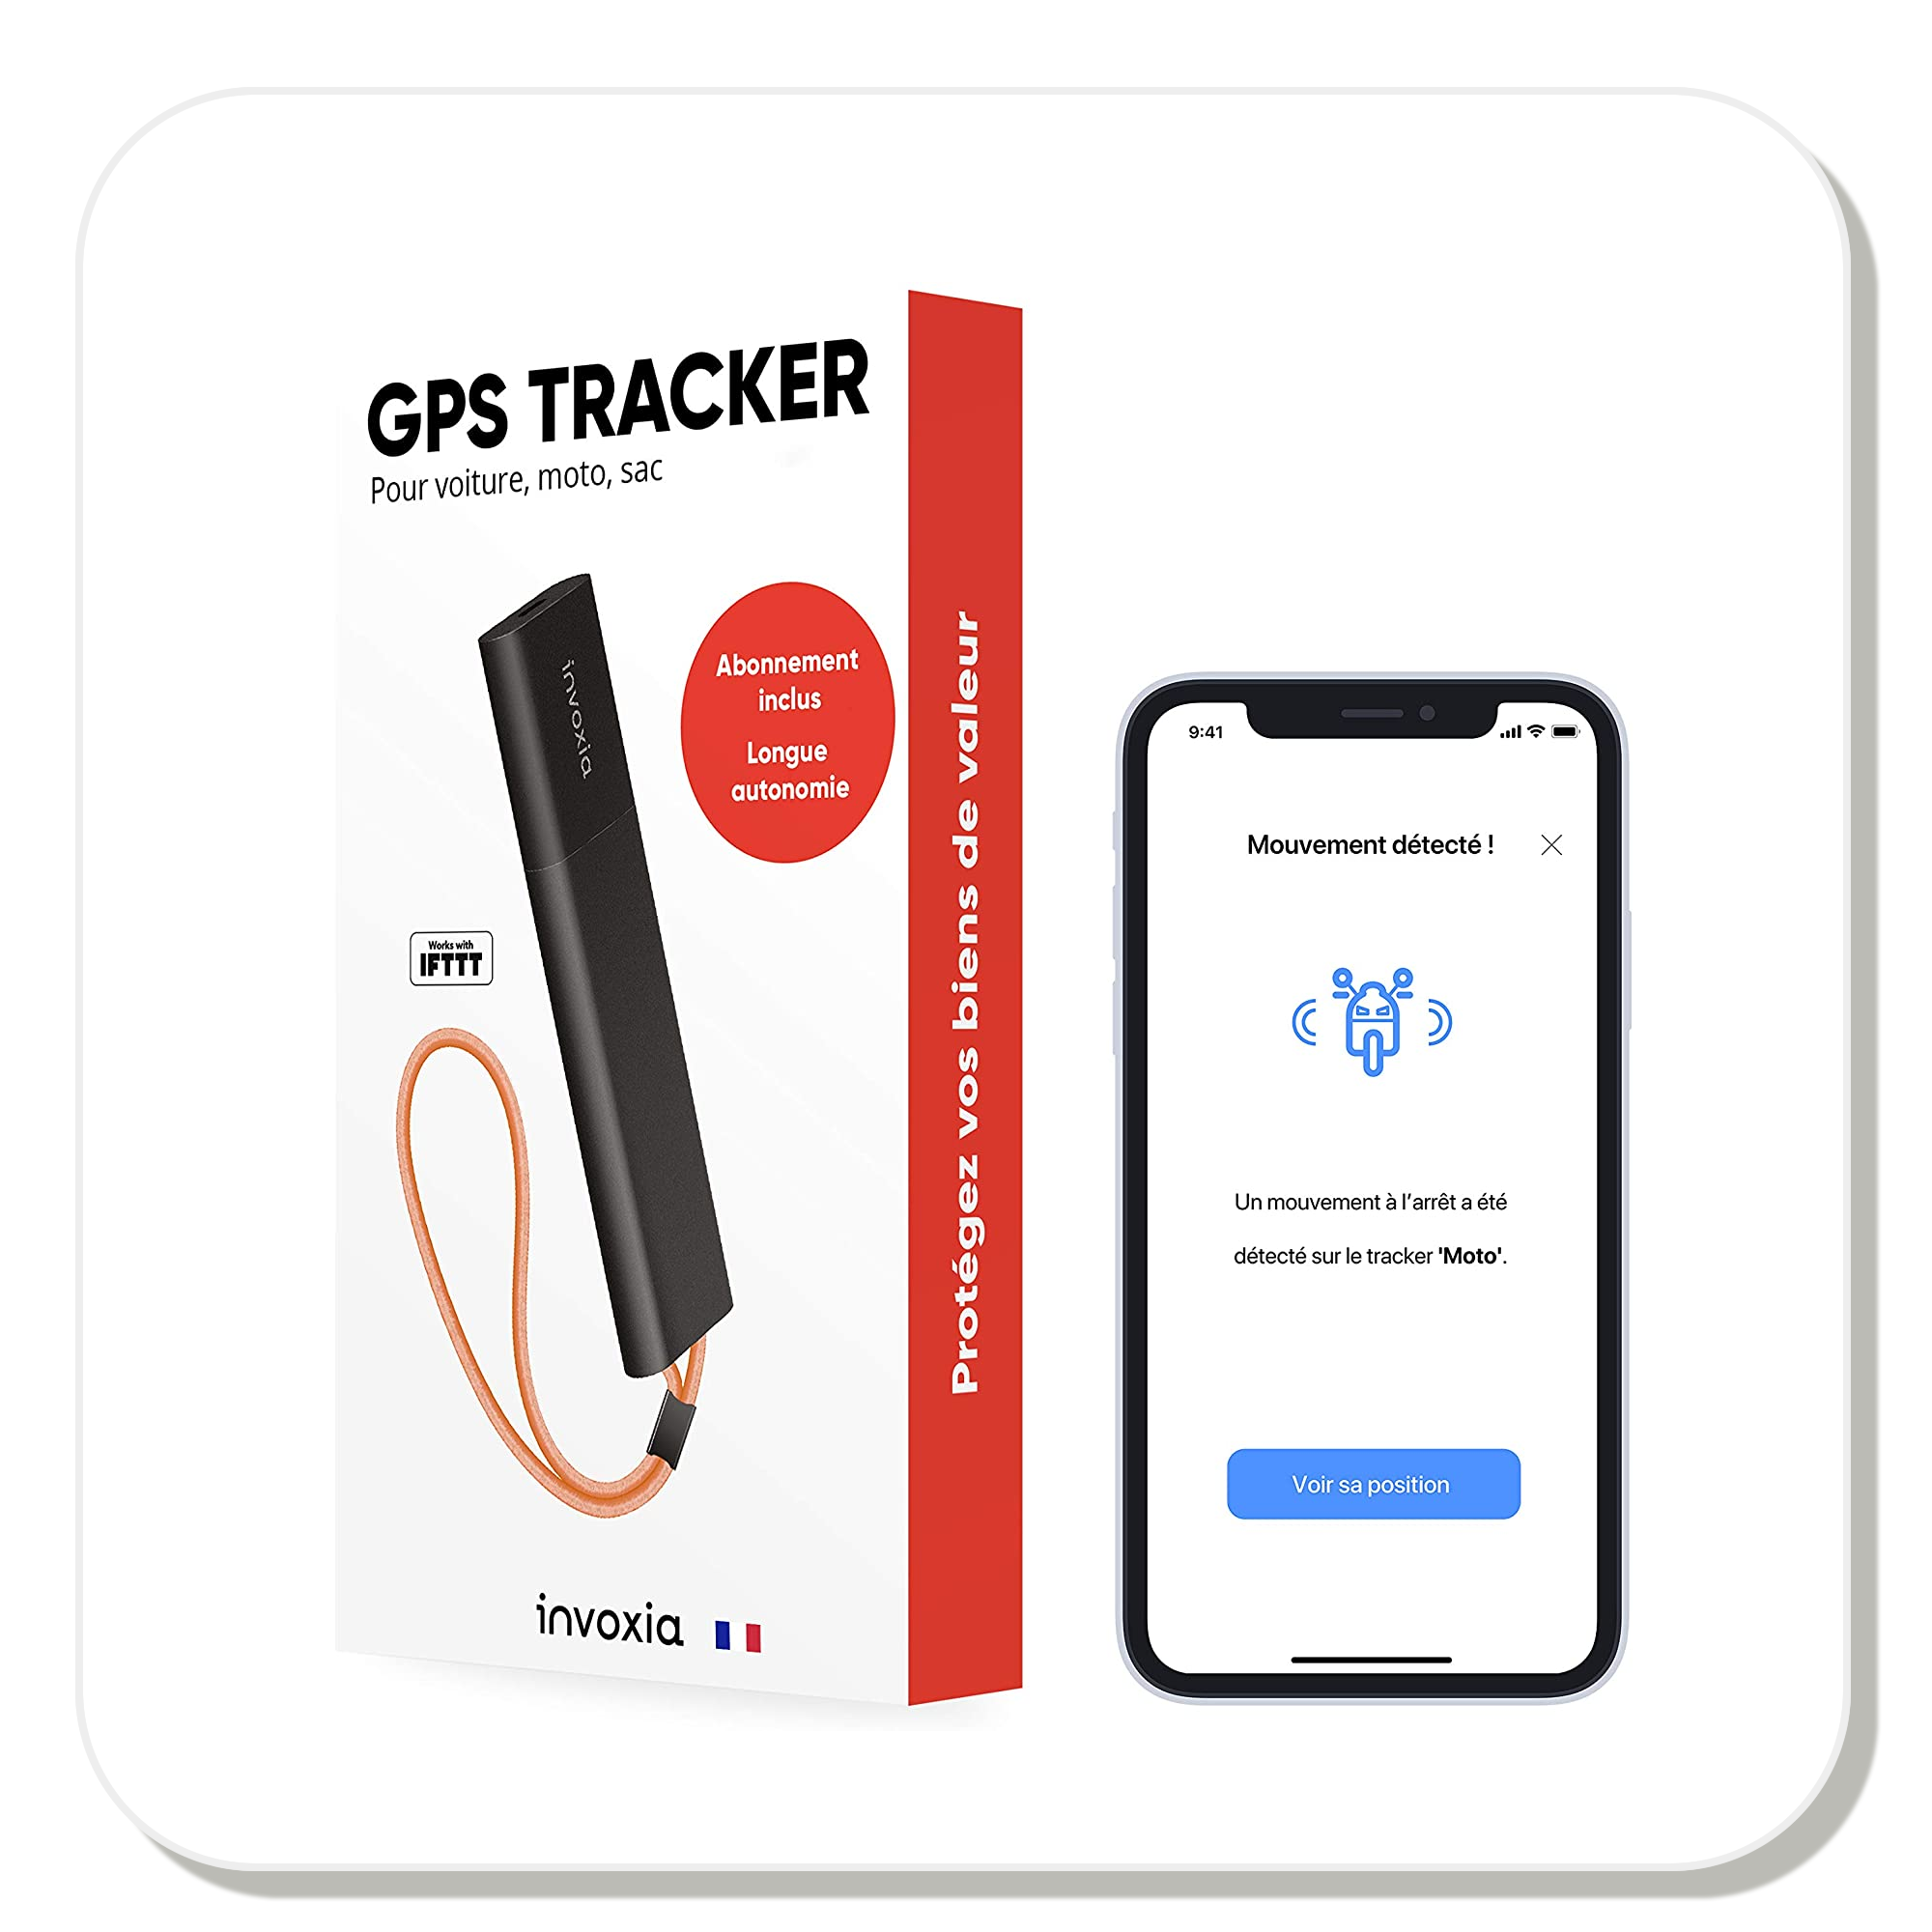  22% de réduction sur ce tracker GPS sans carte SIM